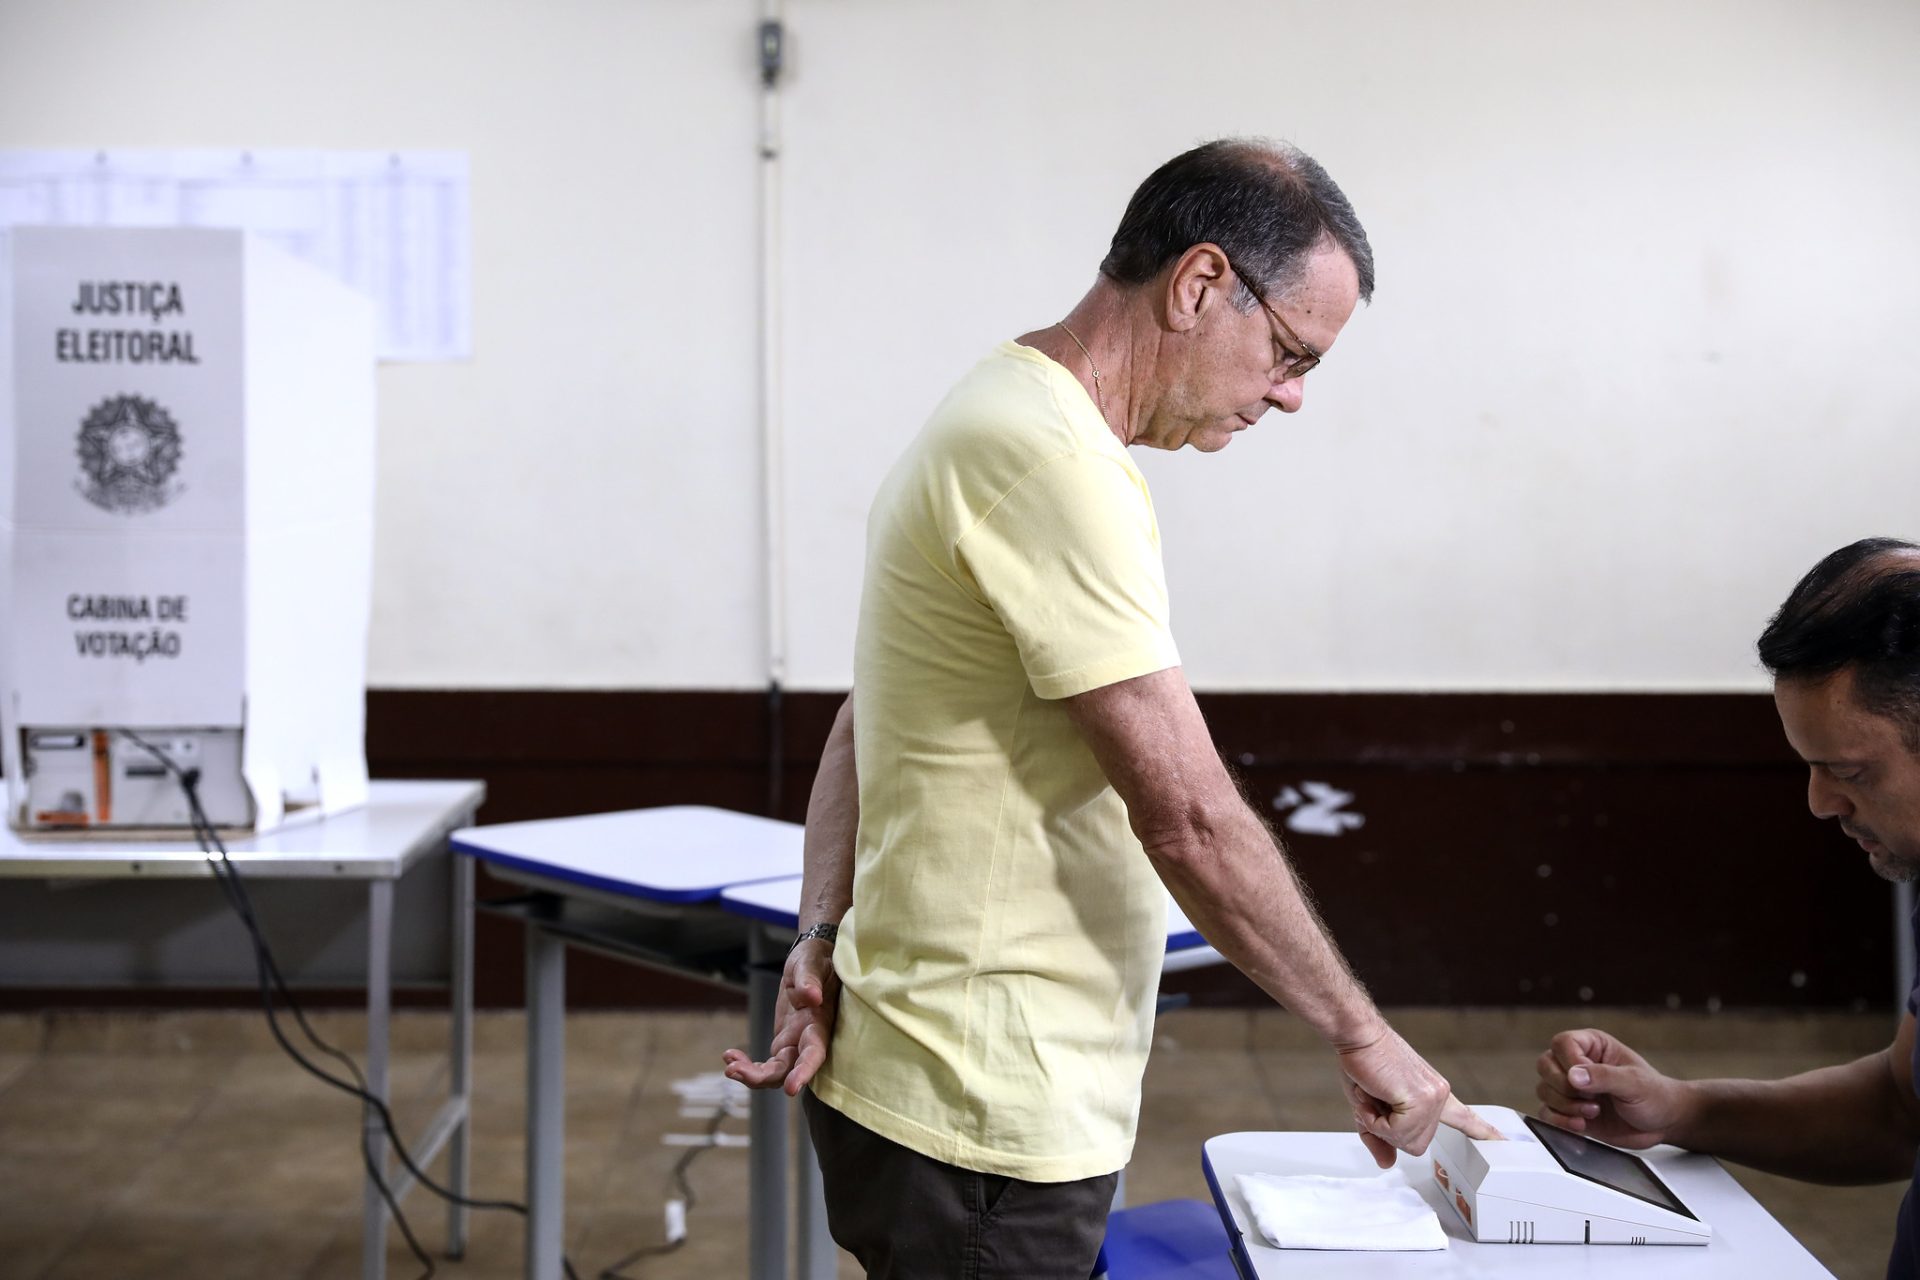 Eleitor que não votou no 1º turno pode votar no 2º, diz TSE